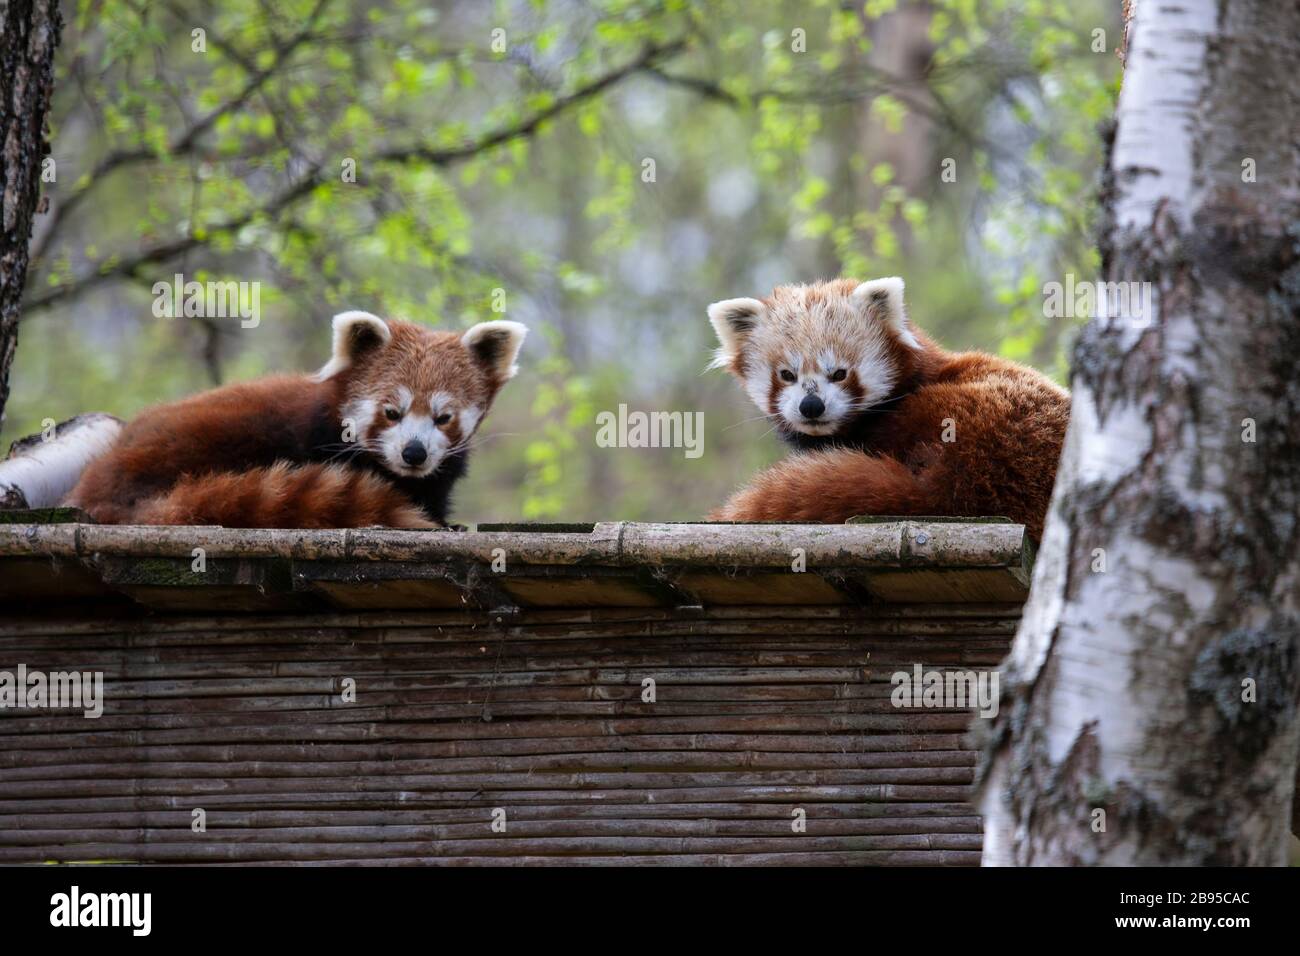 Un paio di Pandas Ailurus Fulgens rosso prigioniero adagiato su una sporgenza in legno in un parco naturale scozzese Foto Stock